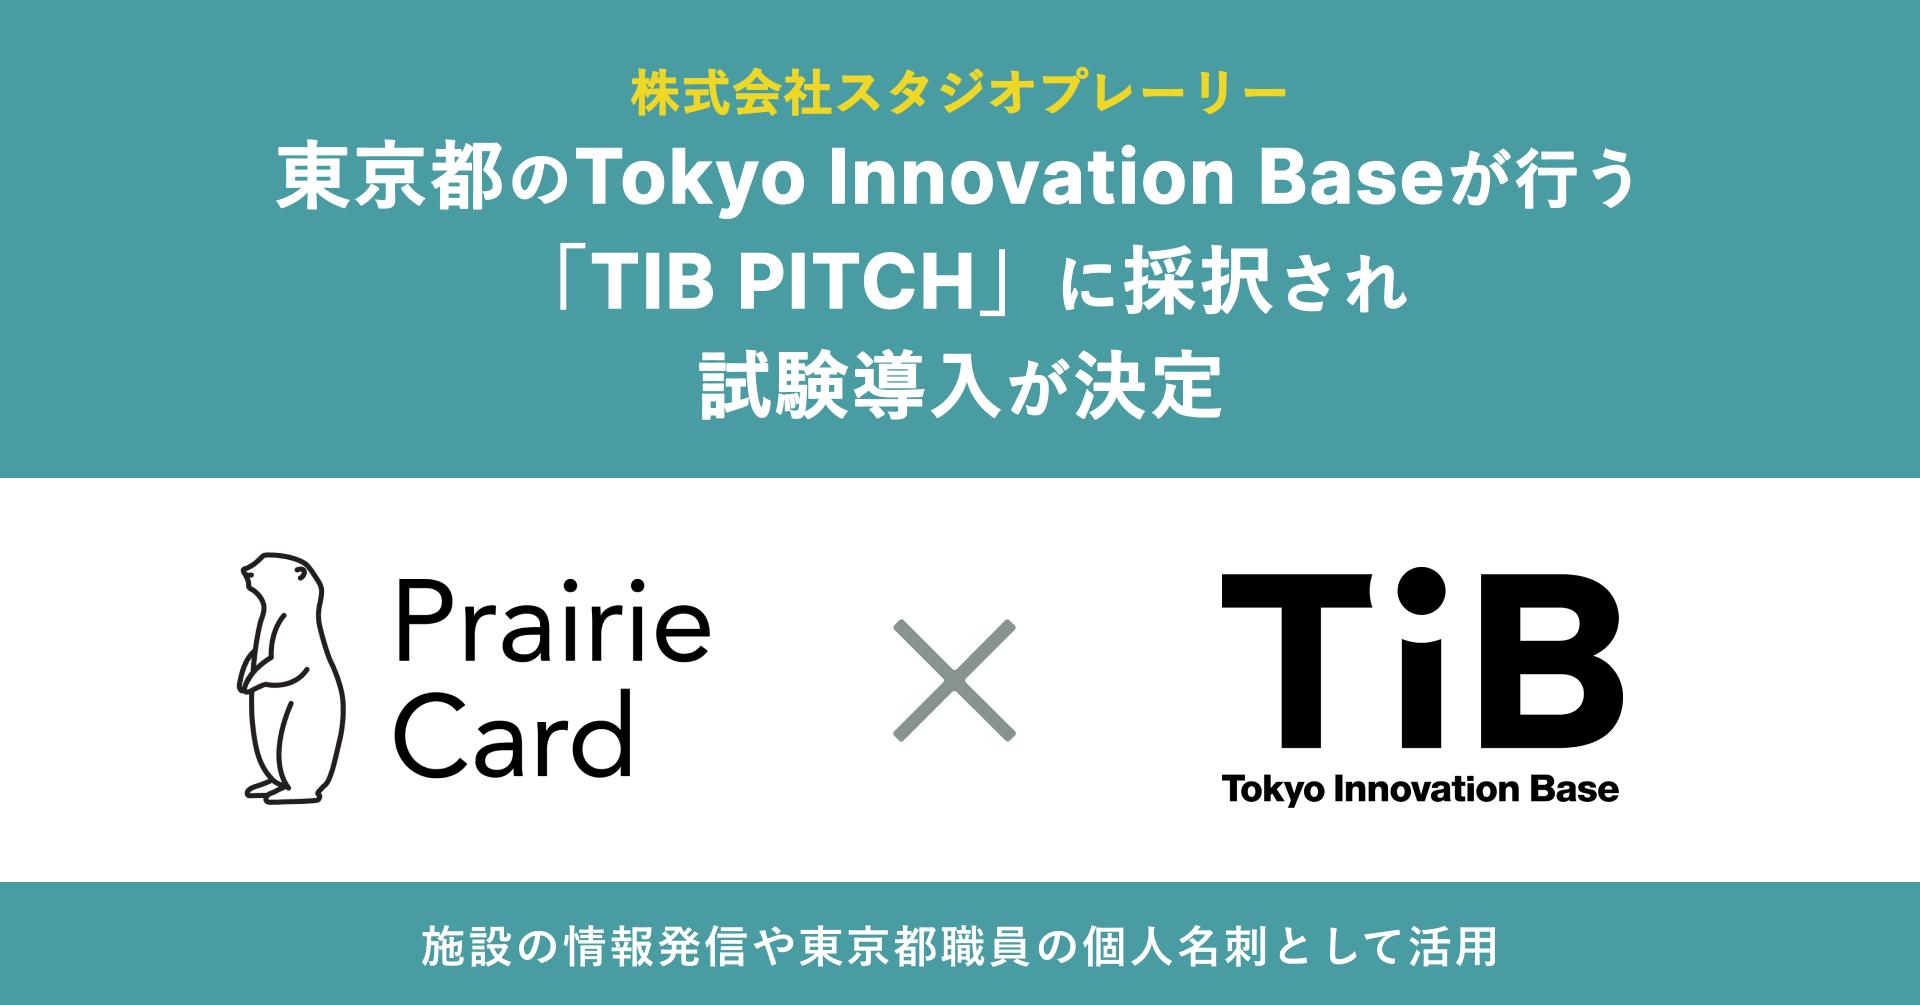 プレーリーカード、東京都のTokyo Innovation Baseが行う「TIB PITCH」に採択され、試験導入が決定